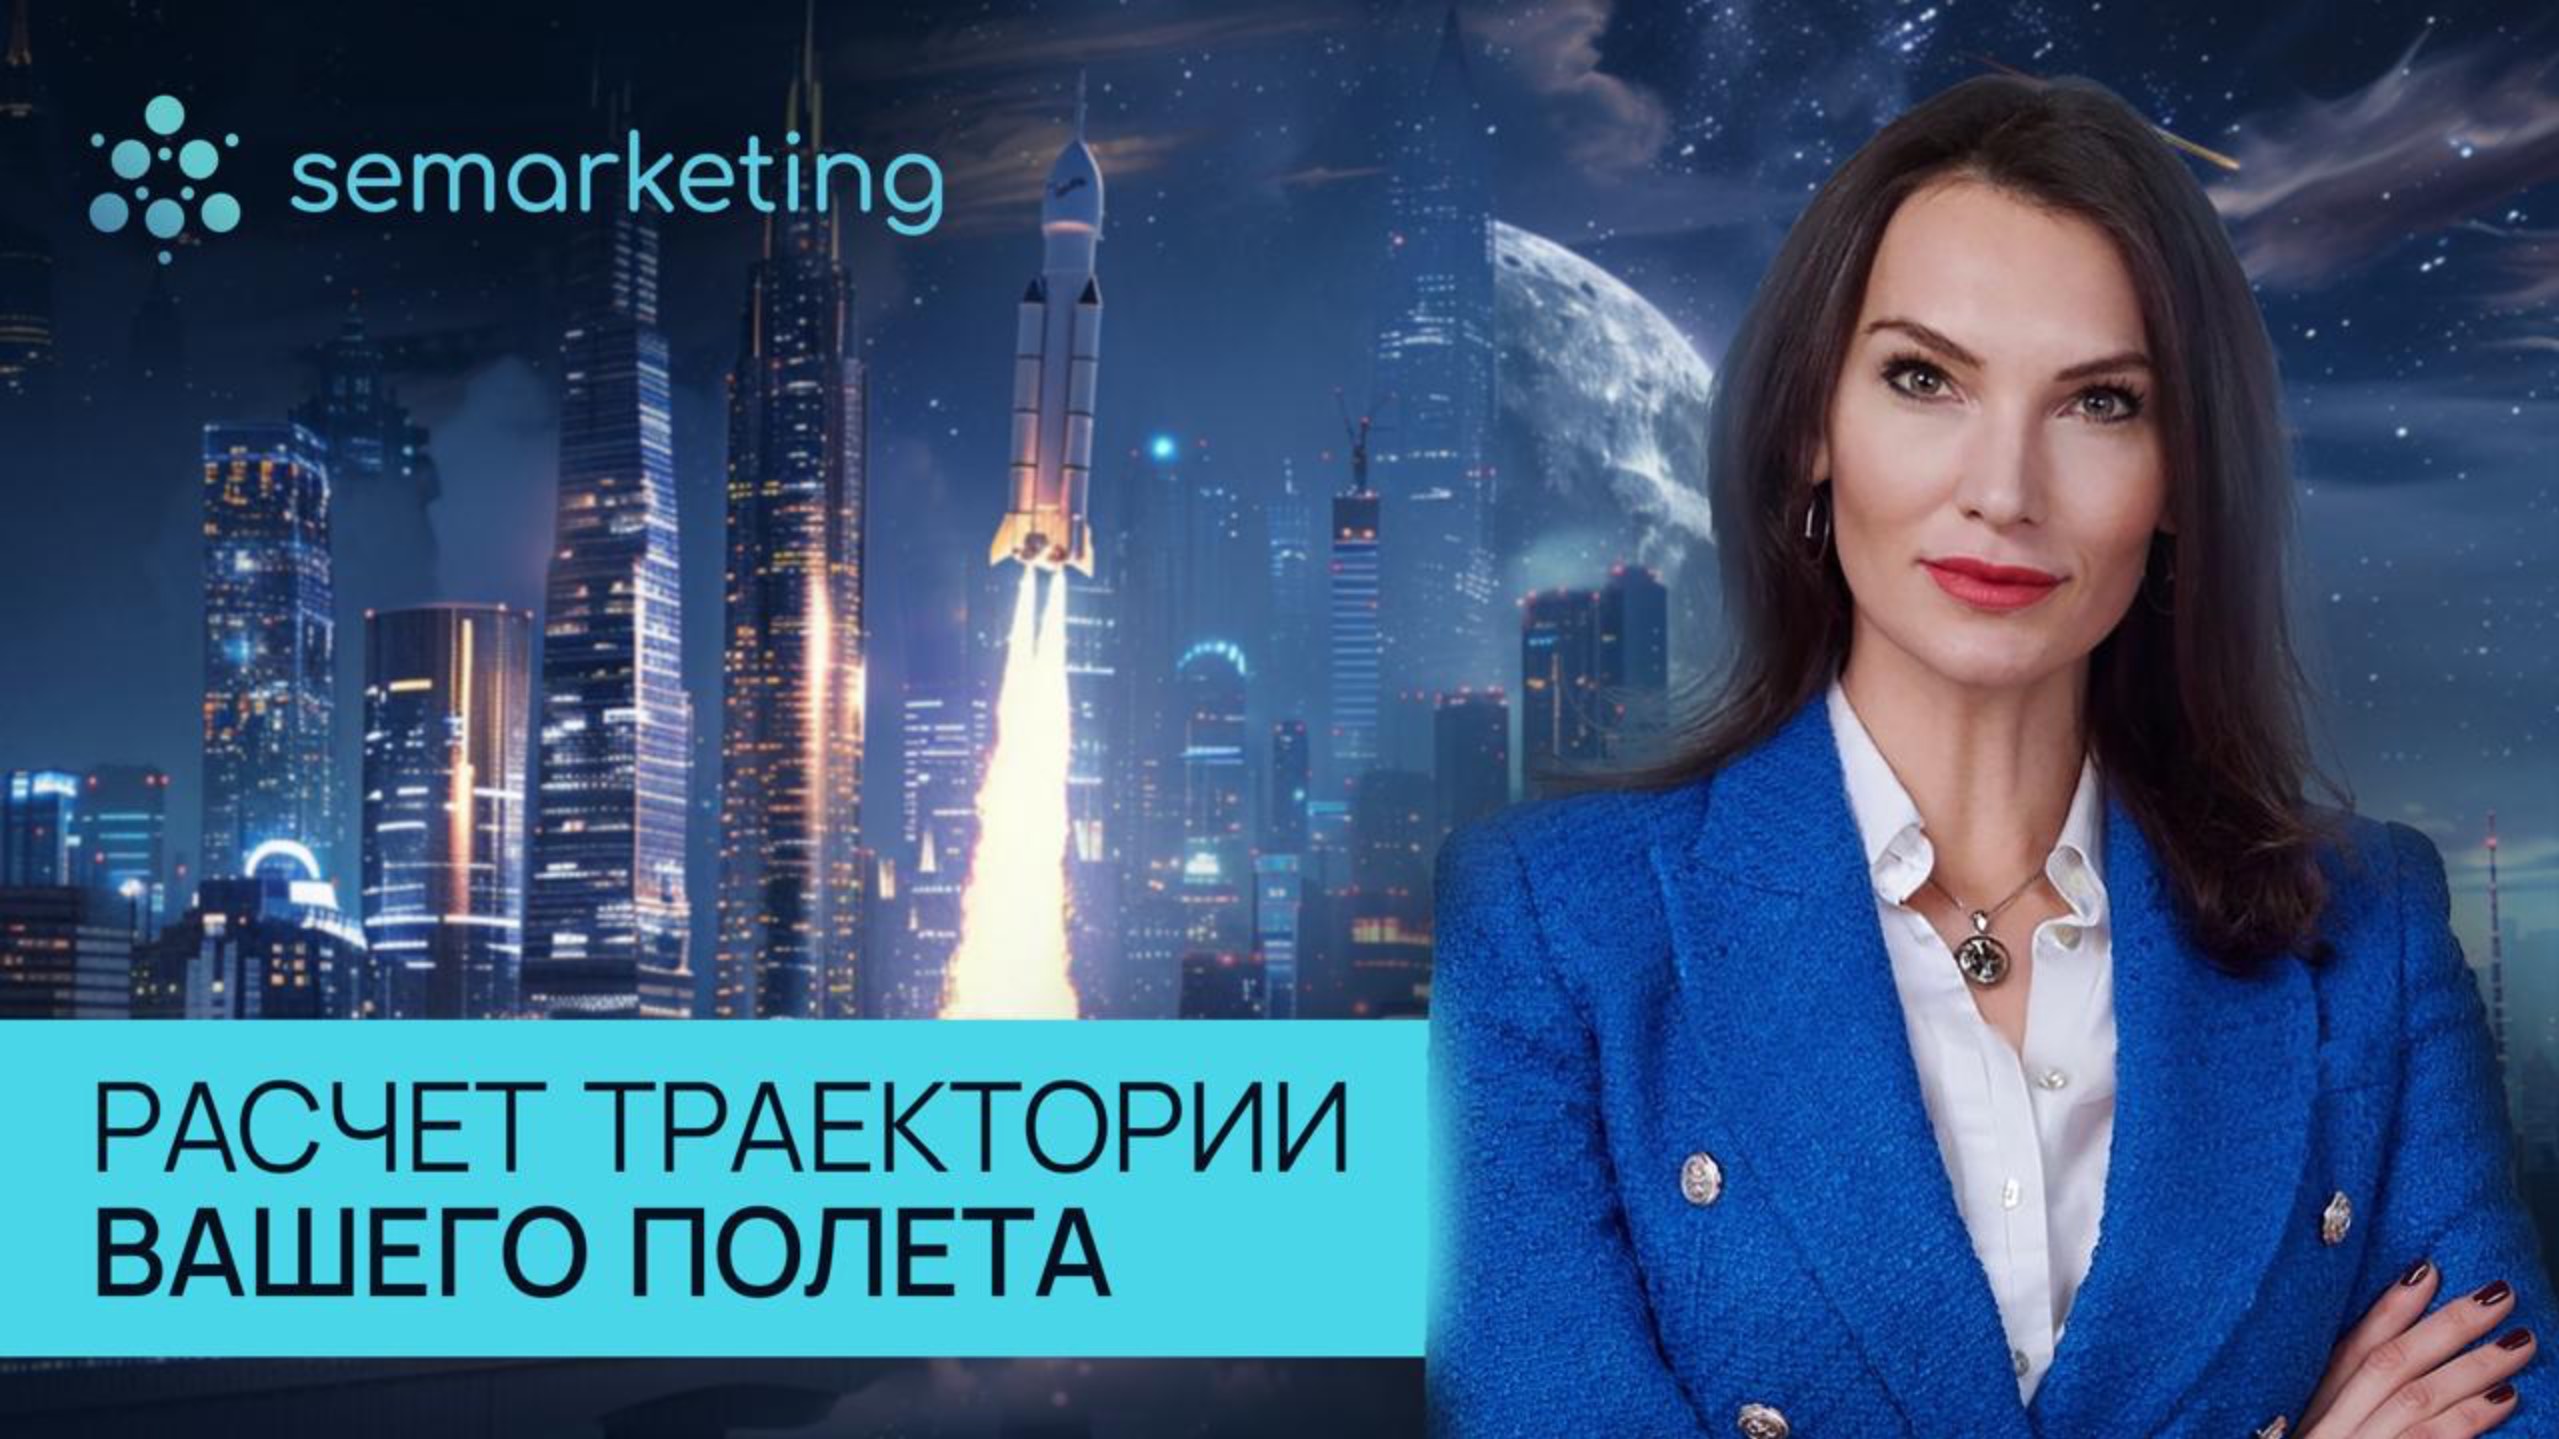 Semarketing - стратегический маркетинг, ведение стартапов, работа с потребителями, ИИ-платформа